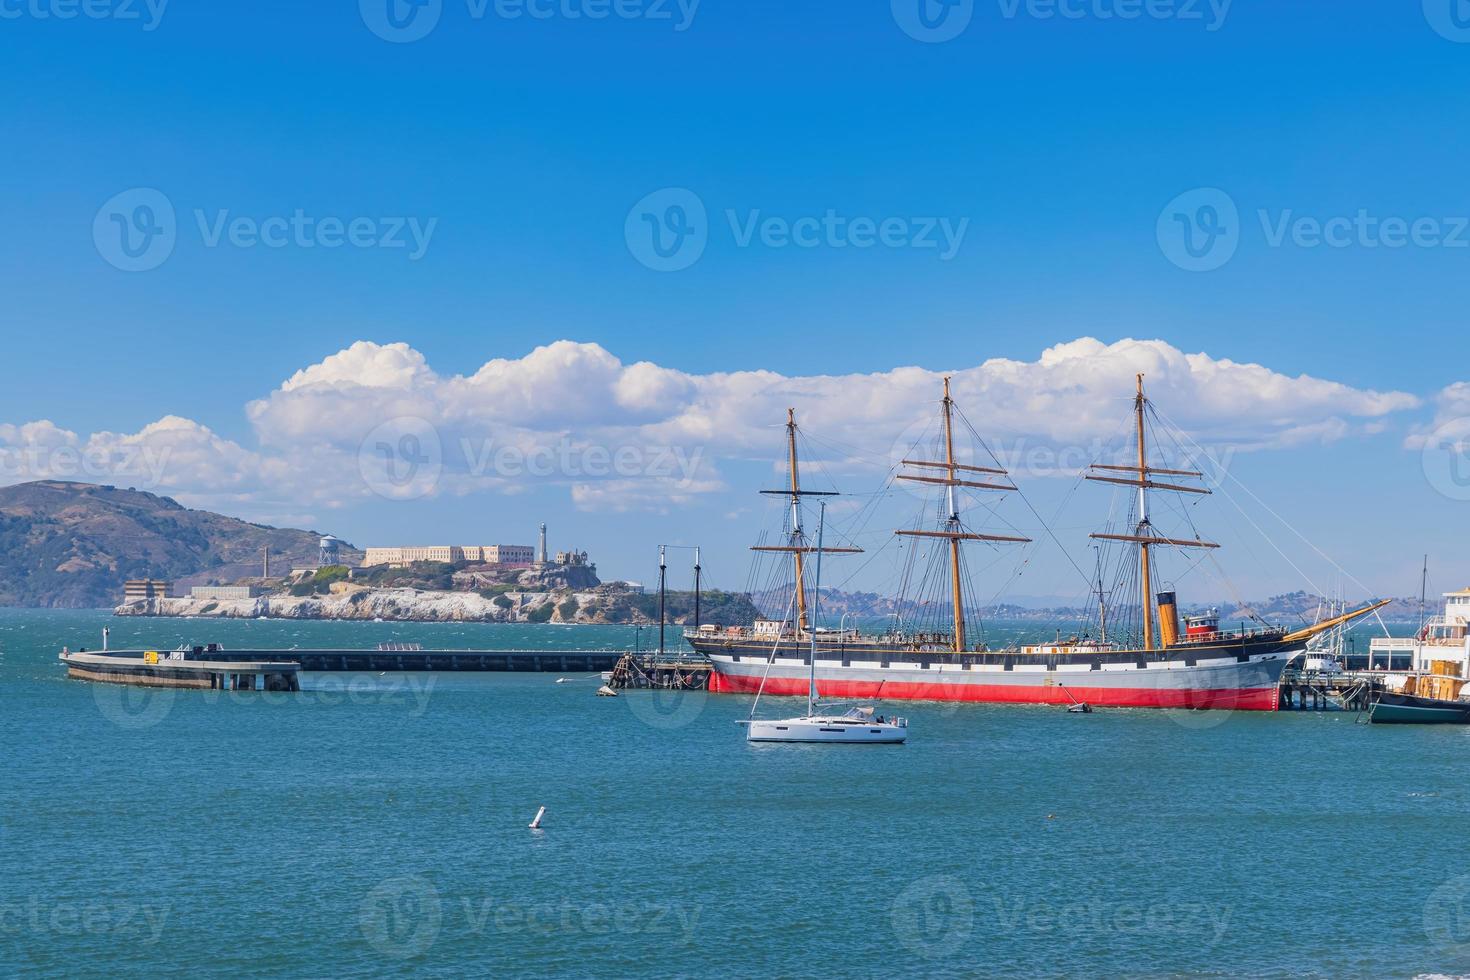 Sunny view of the Alcatraz Island and San Francisco Bay photo